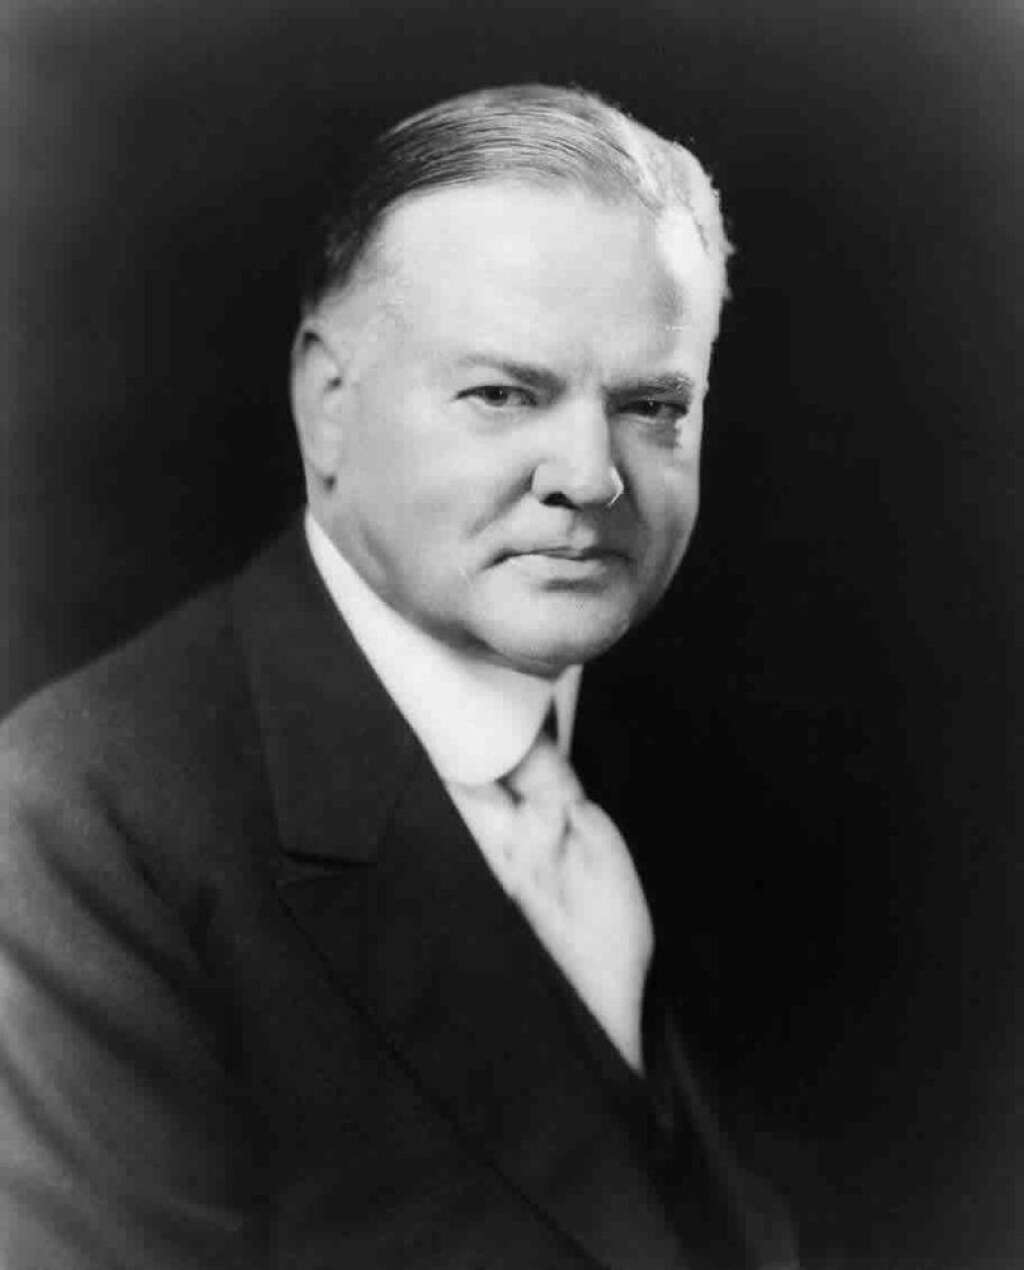 Herbert C. Hoover 1929-1933 -